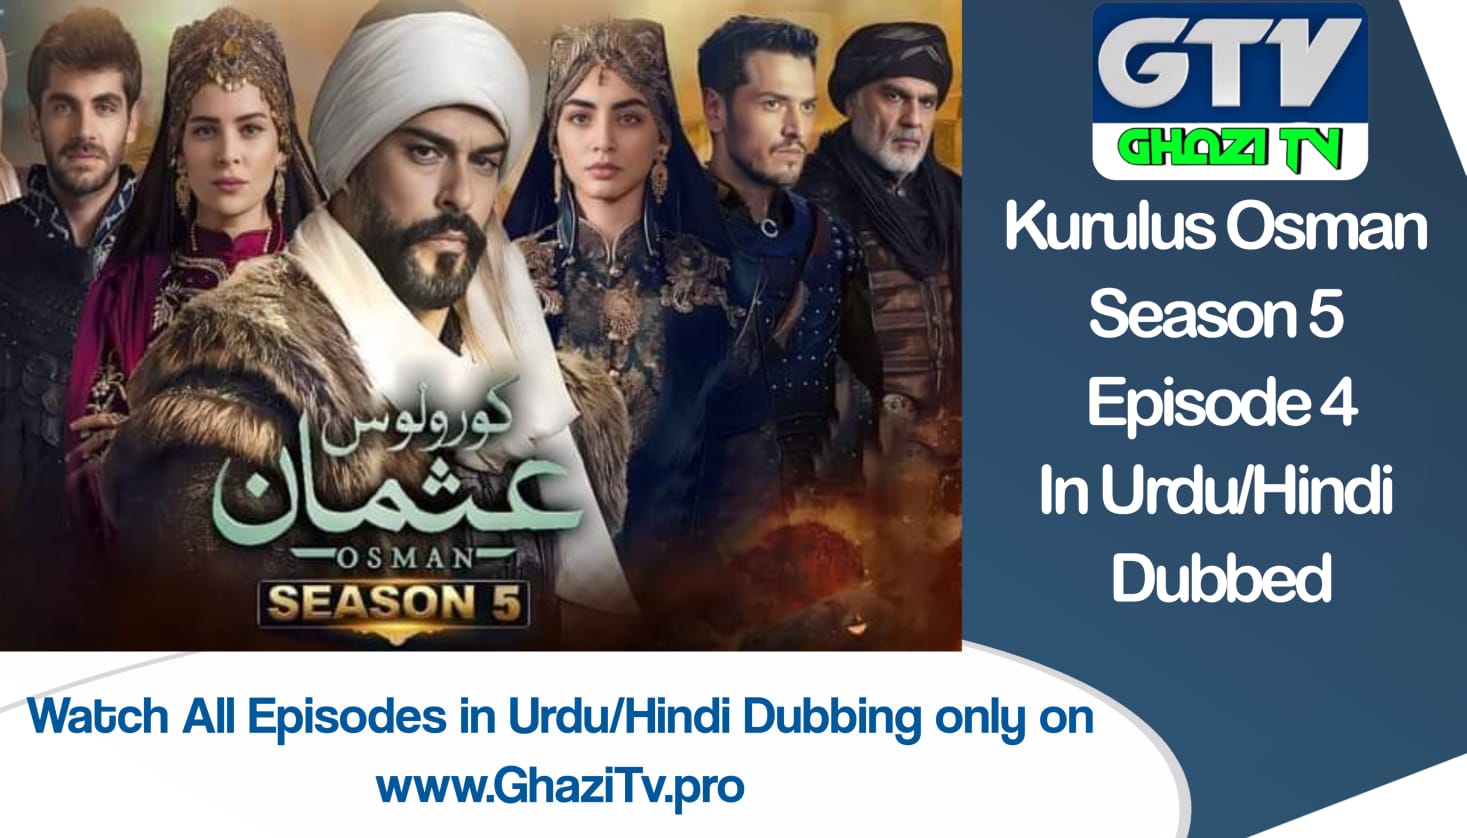 Kurulus Osman Season 5 Episode 4 in Urdu Dubbing Free